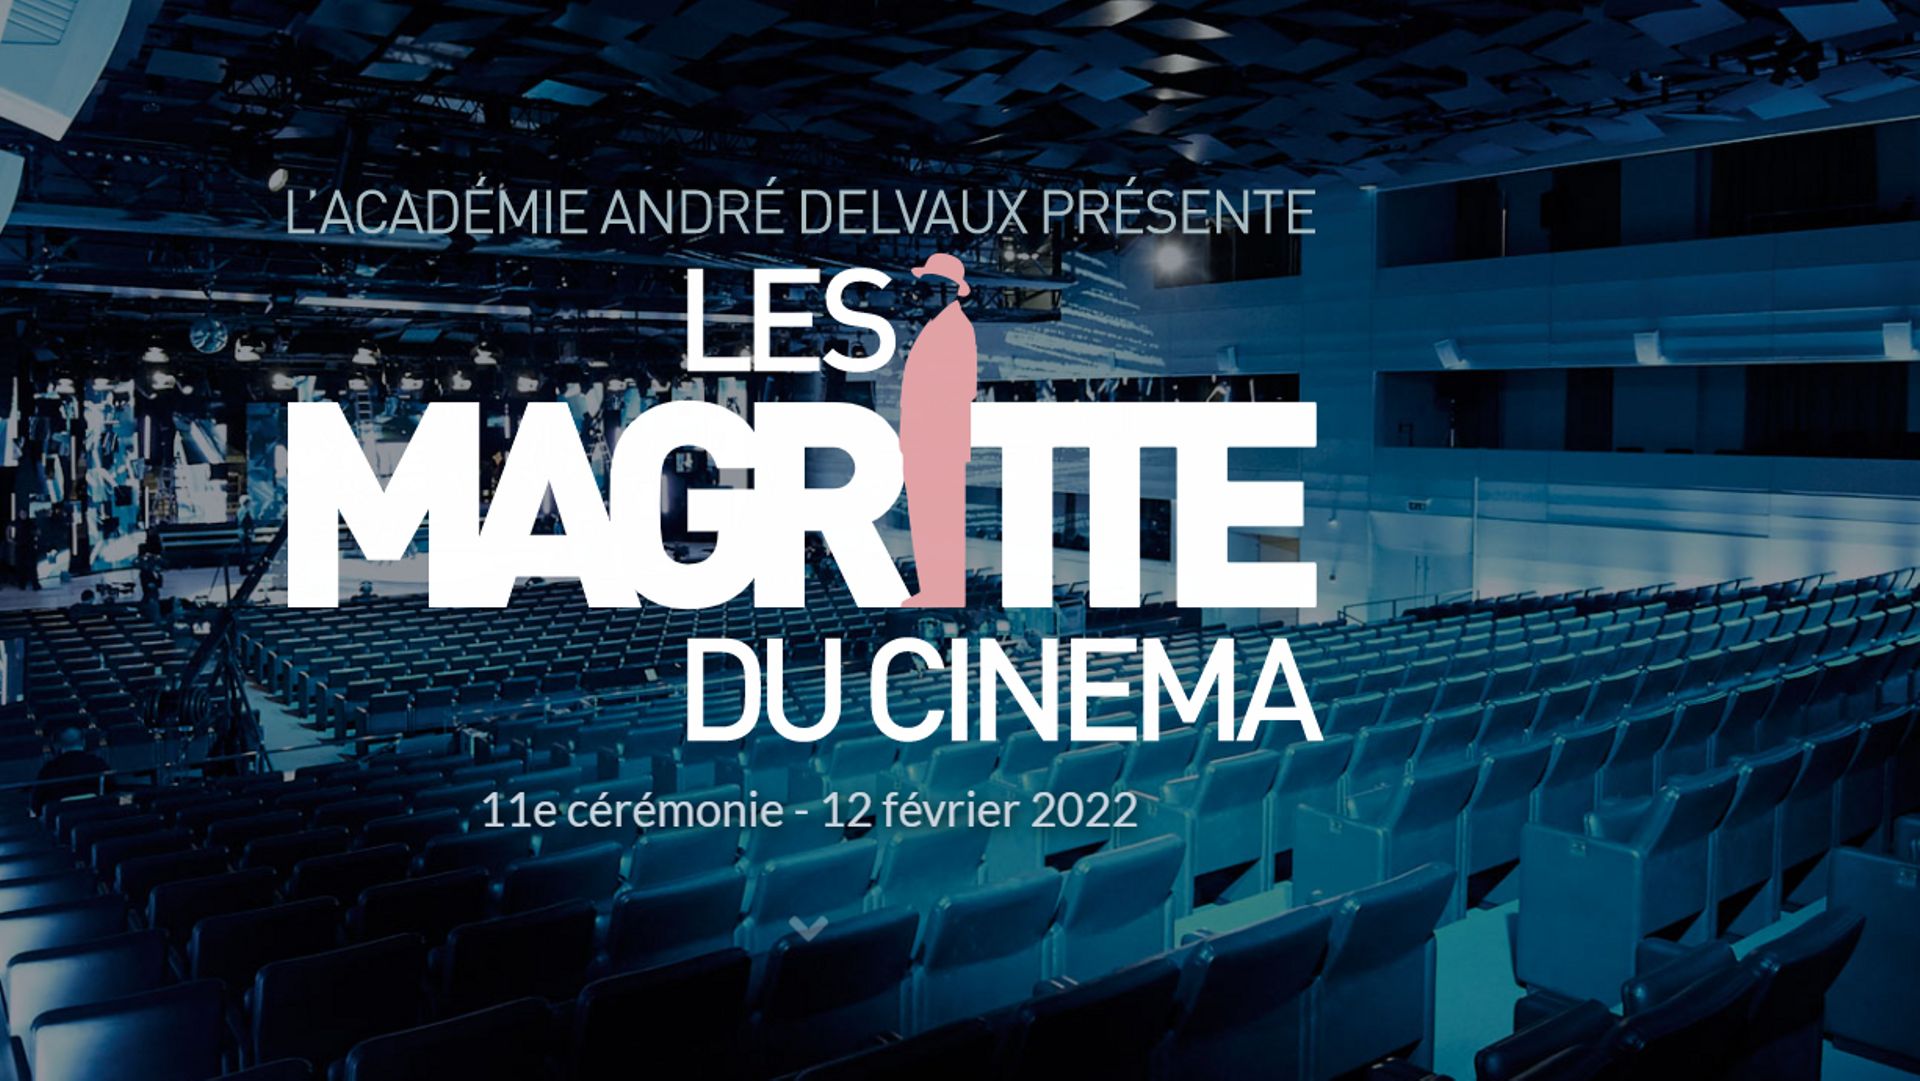 Photo d'illustration pour la 11ème cérémonie de l'événement "Magritte du Cinéma" qui aura lieu le 12 février 2022.